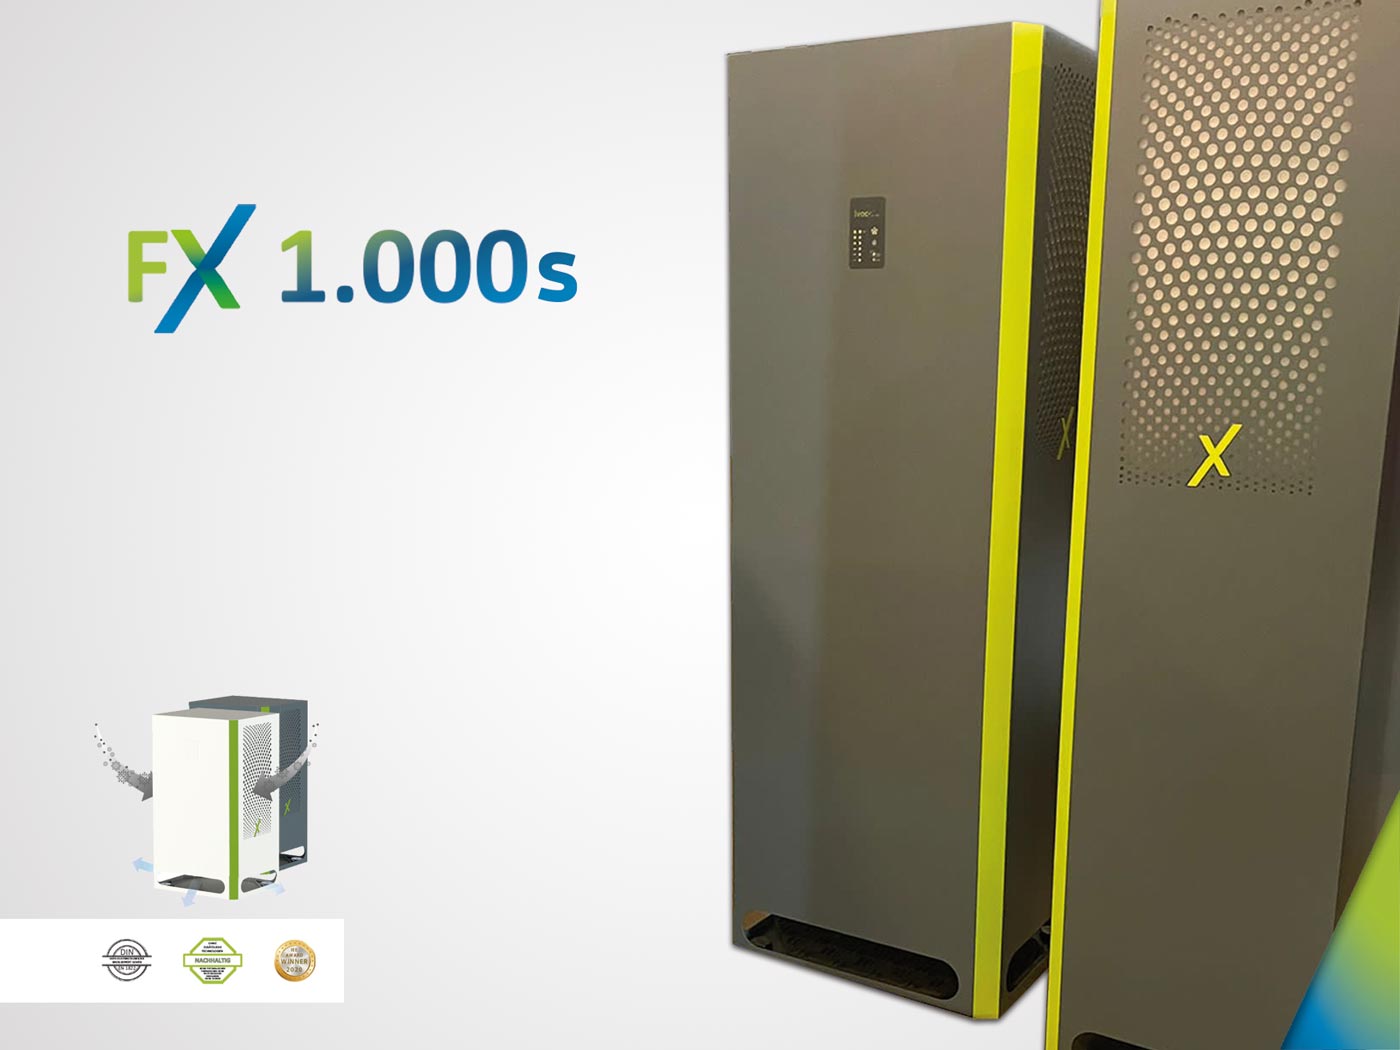 IVOC-X FX 1.000S - Luftreiniger superleise, grau/grün - im GOLDSTIEN.SHOP verfügbar mit Gratisversand ab Schweizer Lager! (4260739140071)